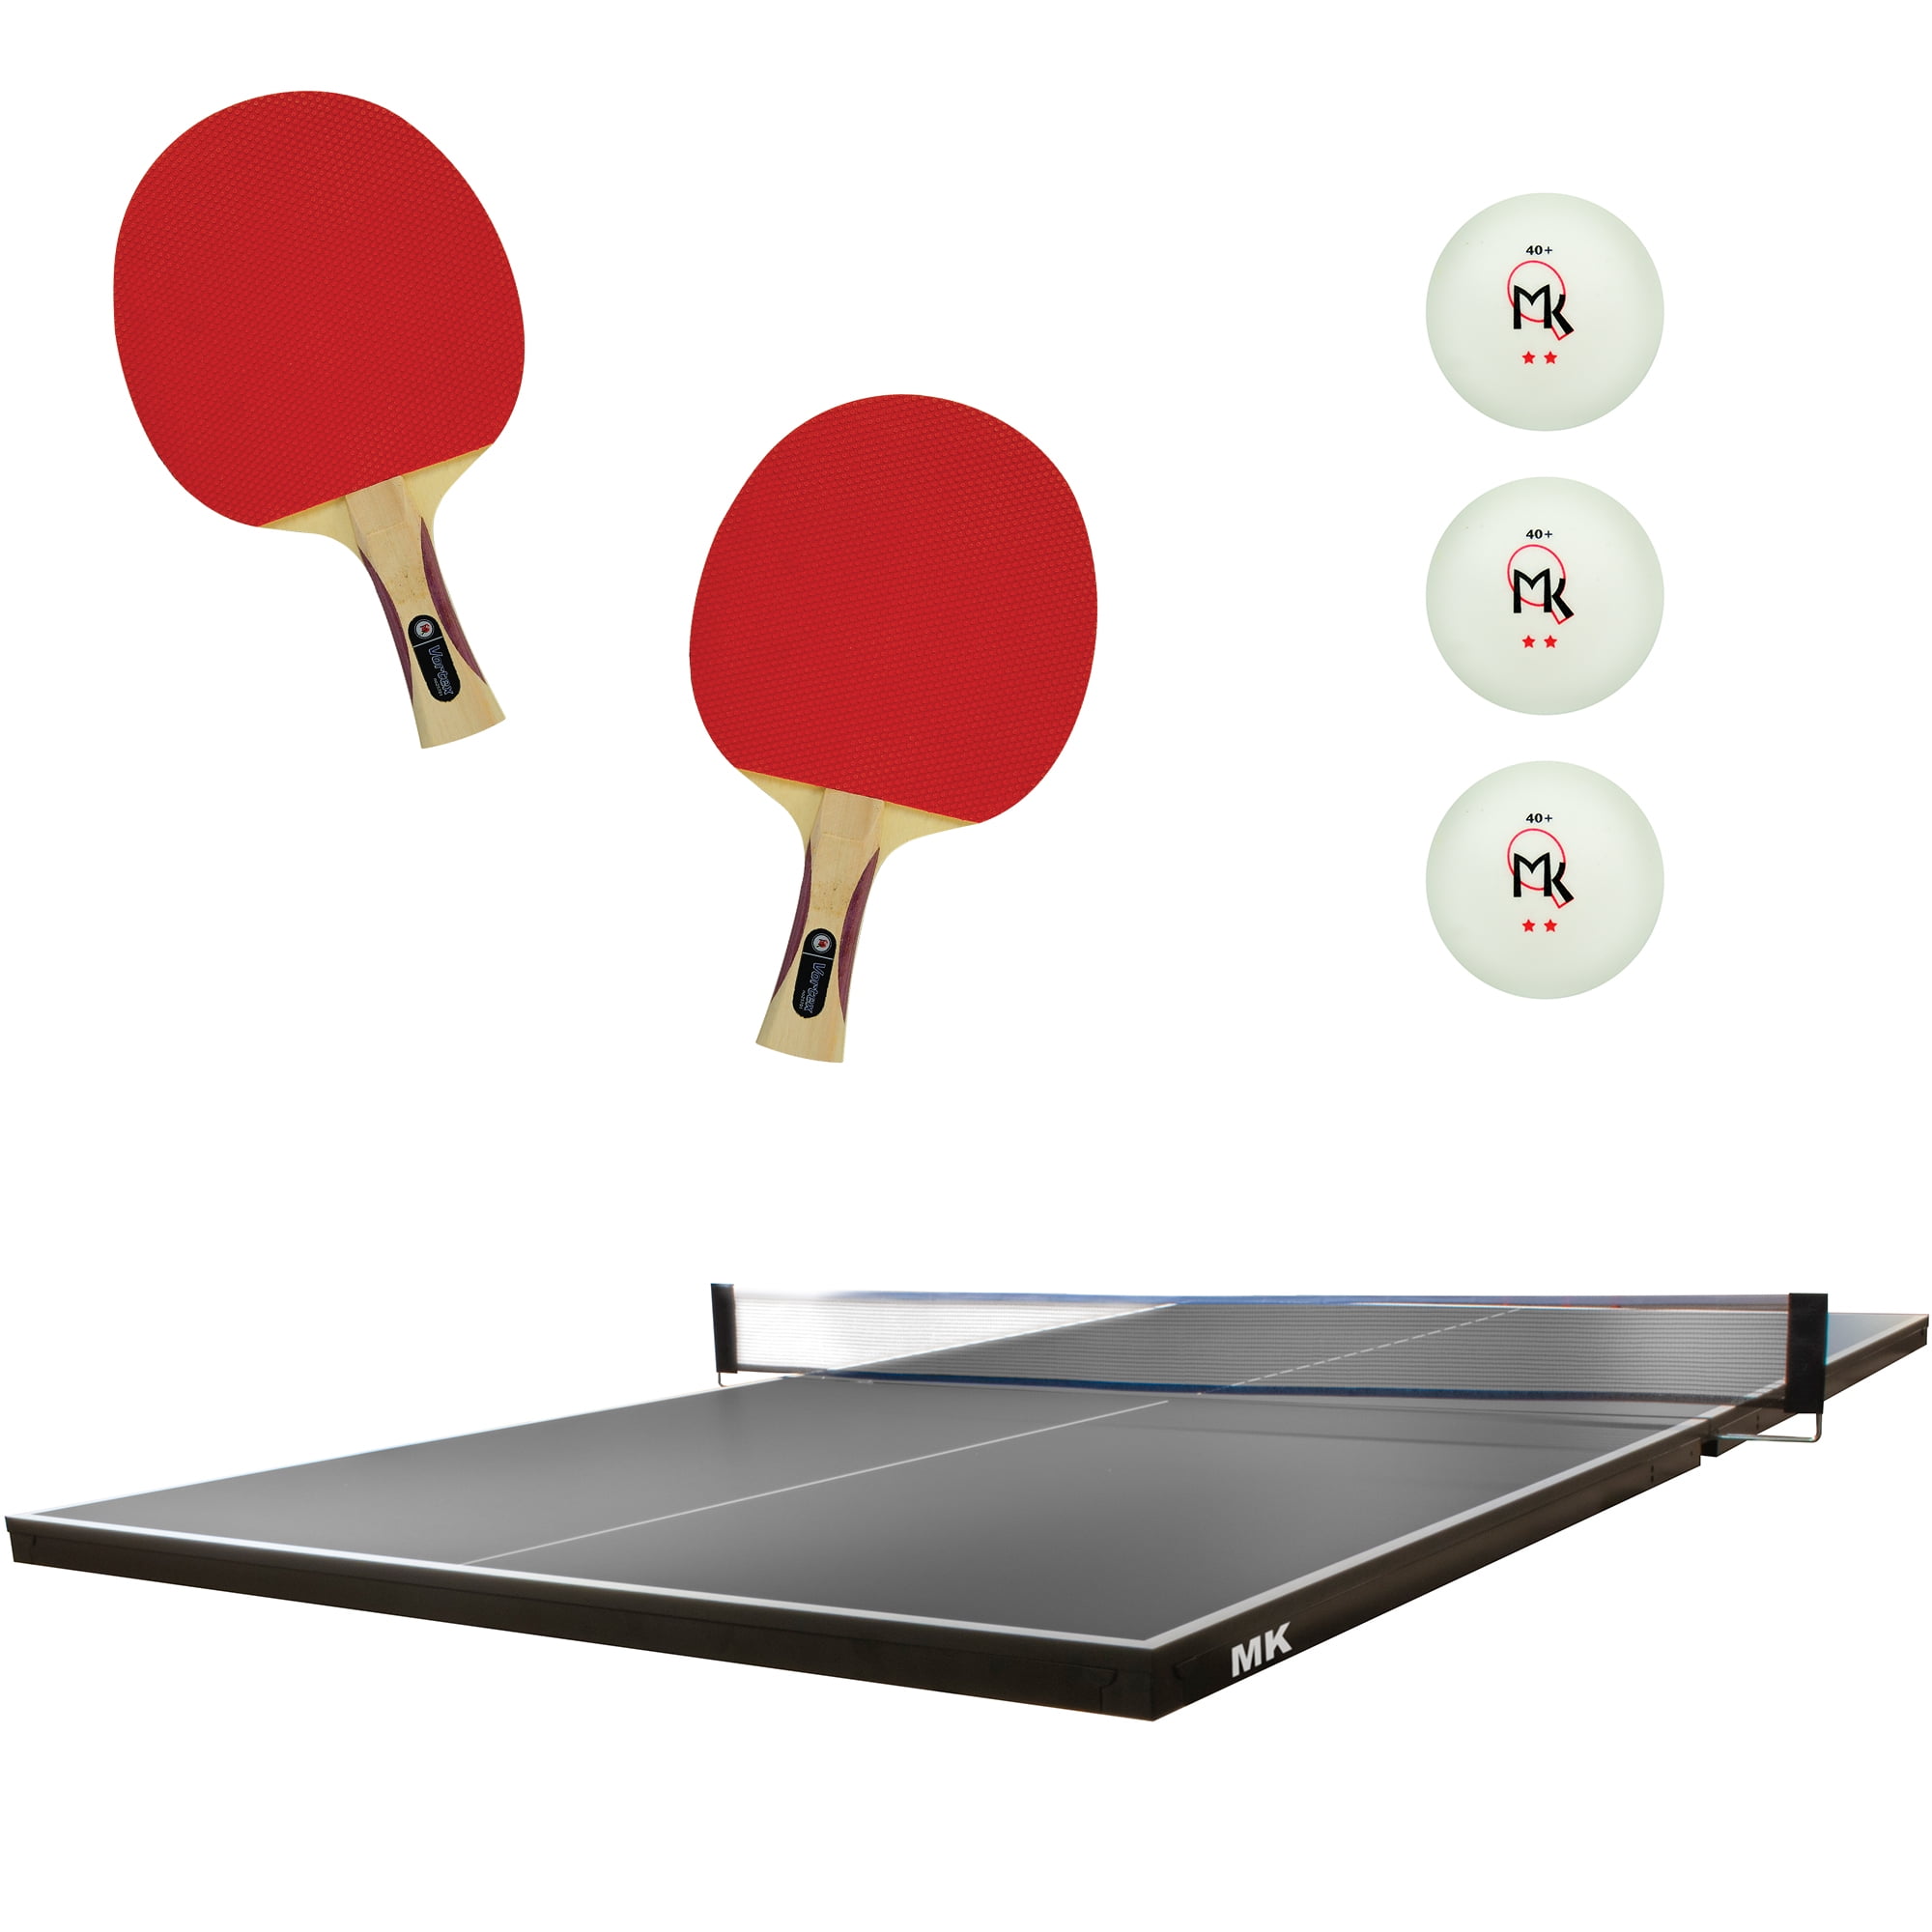 Bowmar Table Tennis Balls Plastic One Star 